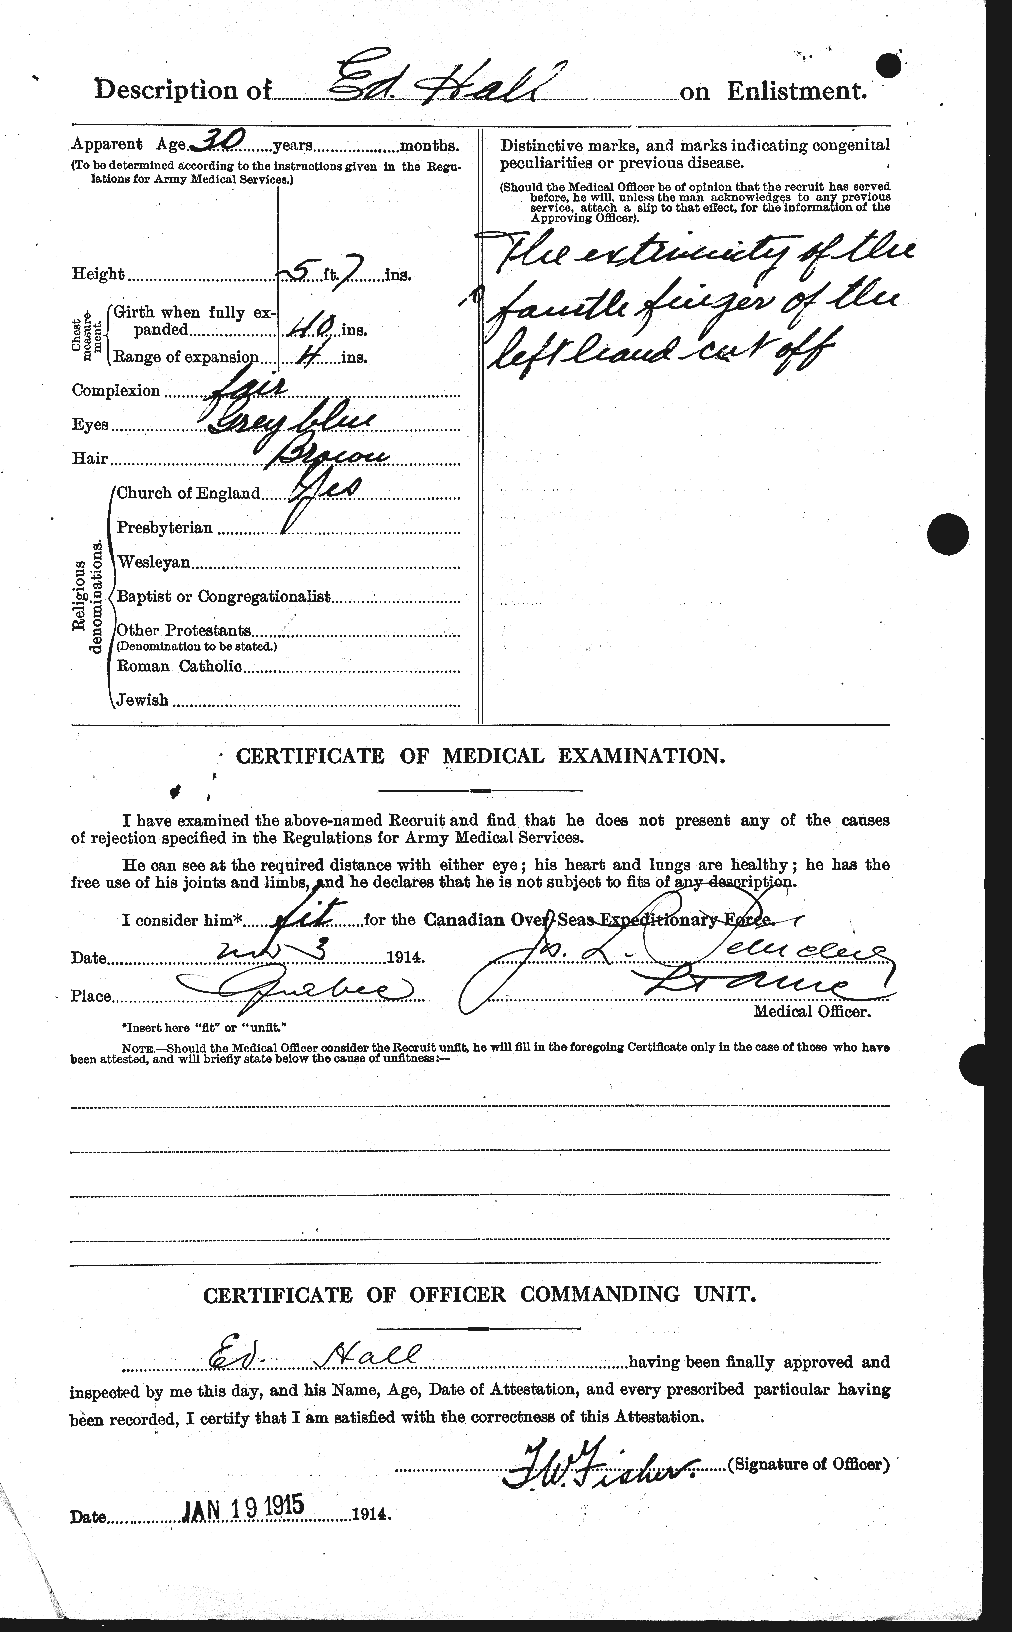 Dossiers du Personnel de la Première Guerre mondiale - CEC 372711b